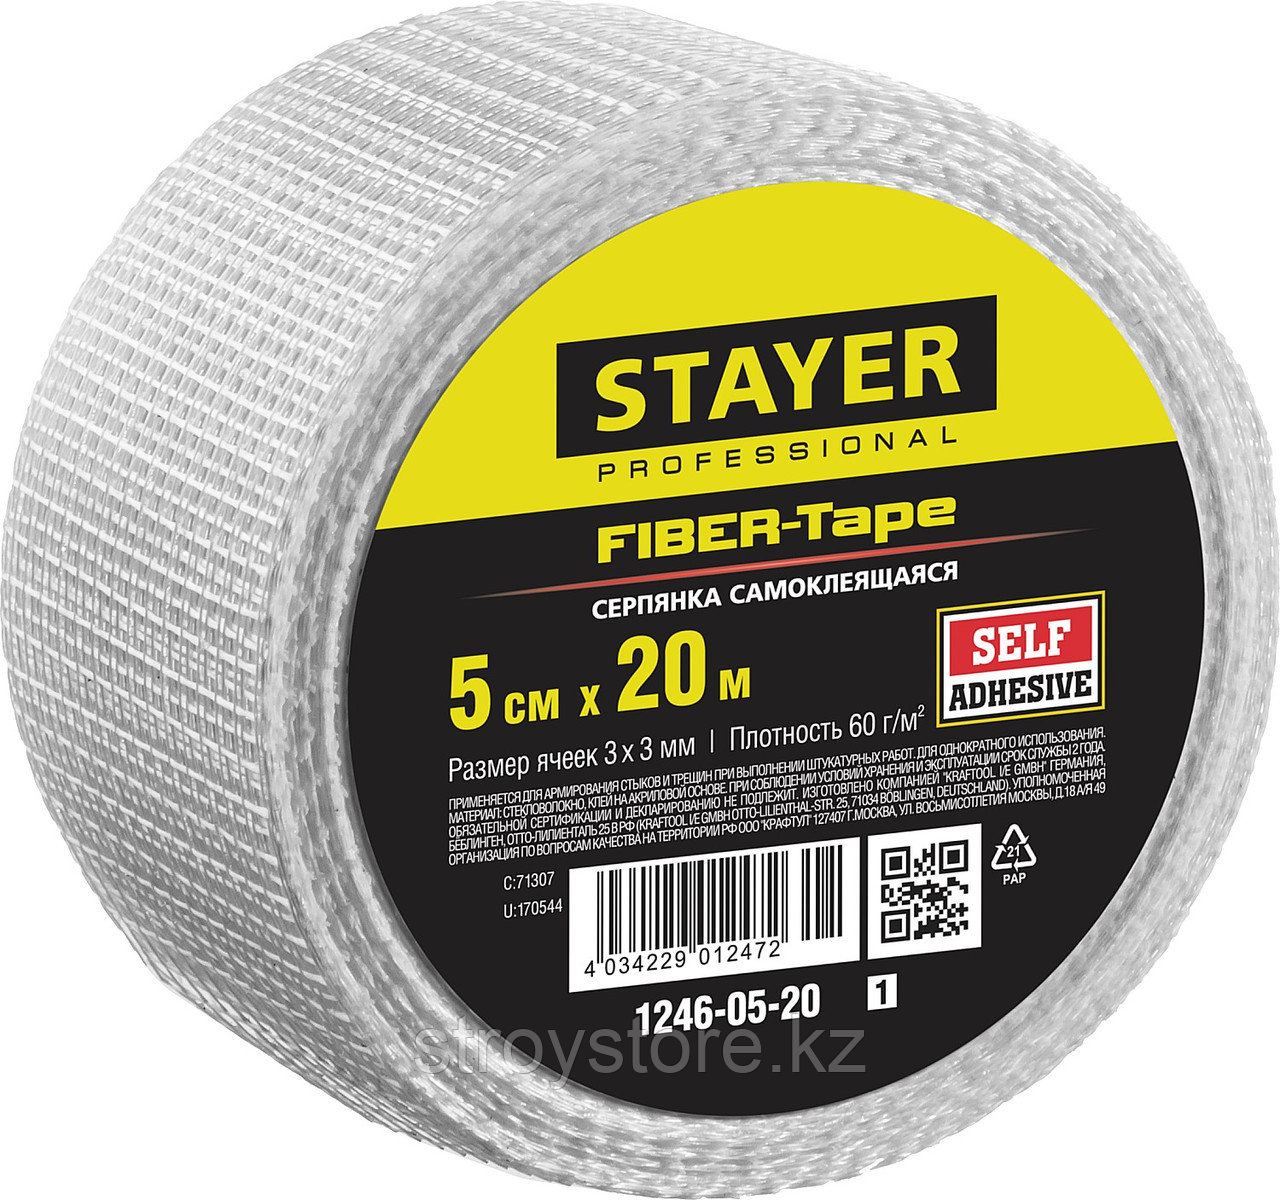 STAYER FIBER-Tape 5см х 20м 3х3 мм, Самоклеящаяся серпянка, PROFESSIONAL (1246-05-20)